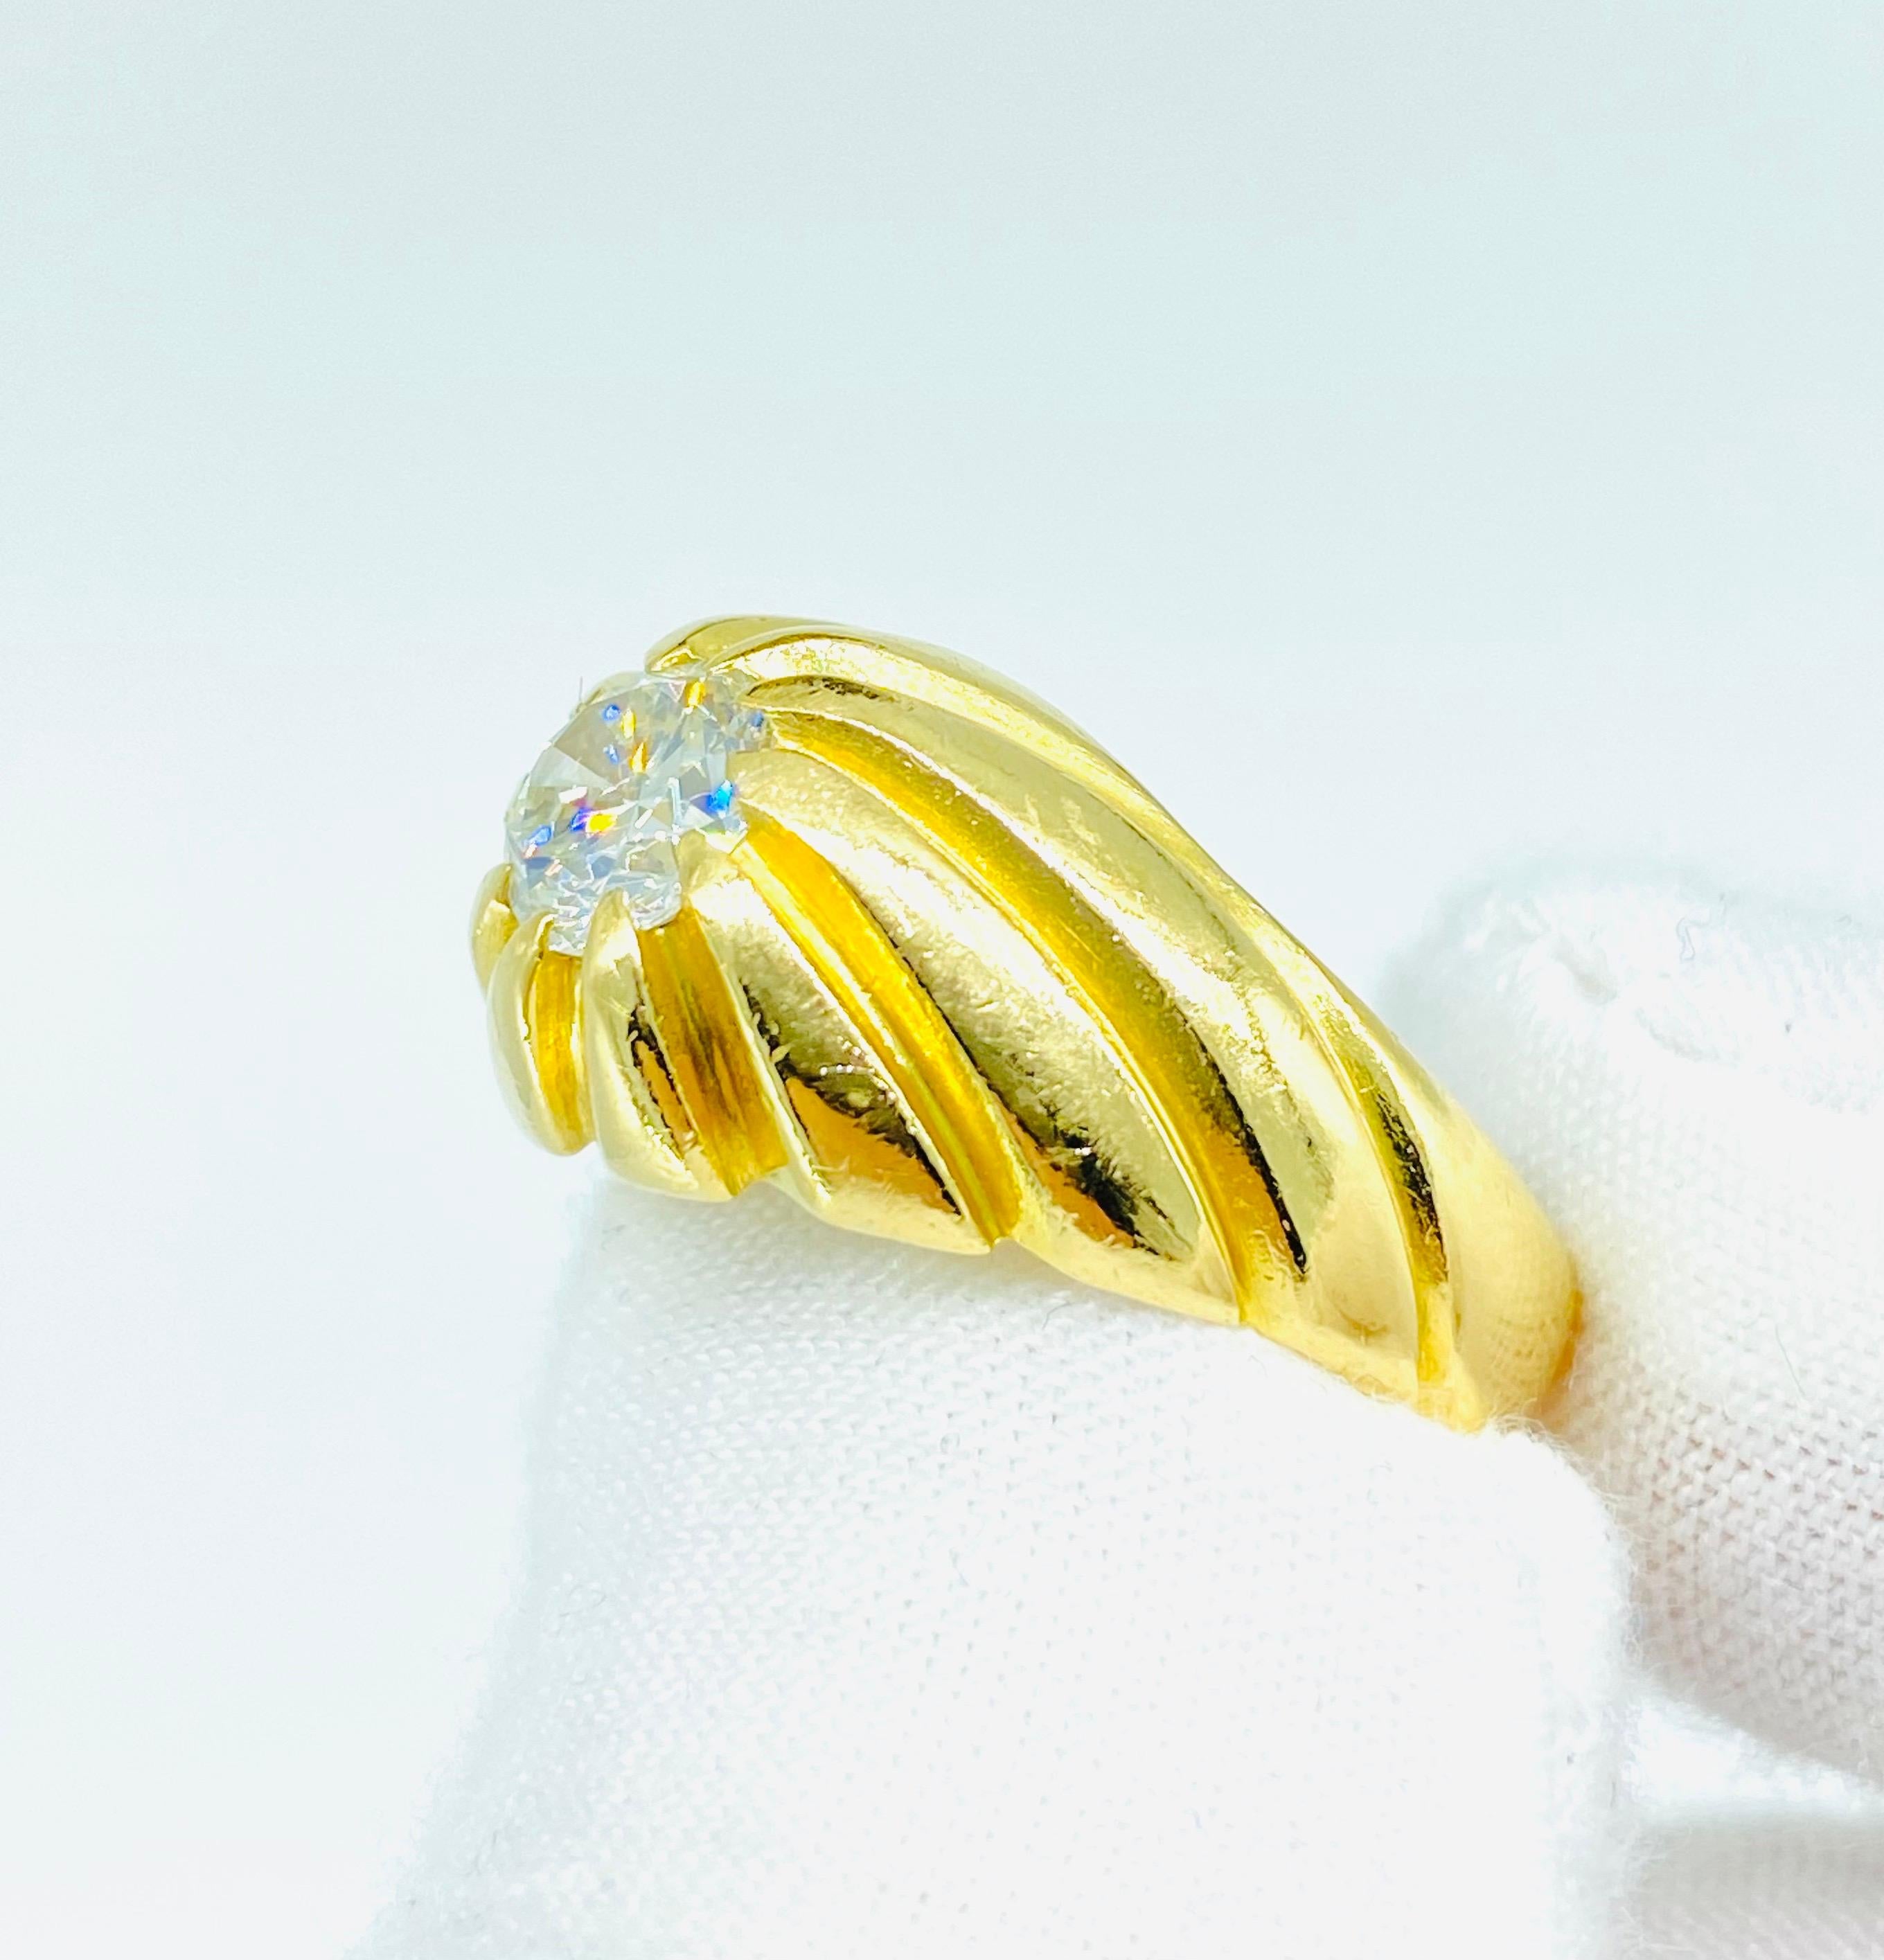 Vintage 1.00 Carat Center Diamond Men's Swirl Pinky Ring 18k Gold. Très impressionnant design de bague tourbillonne donnant l'impression d'une illusion se tordant autour tandis que le magnifique diamant au centre est étincelant et brille de tous ses